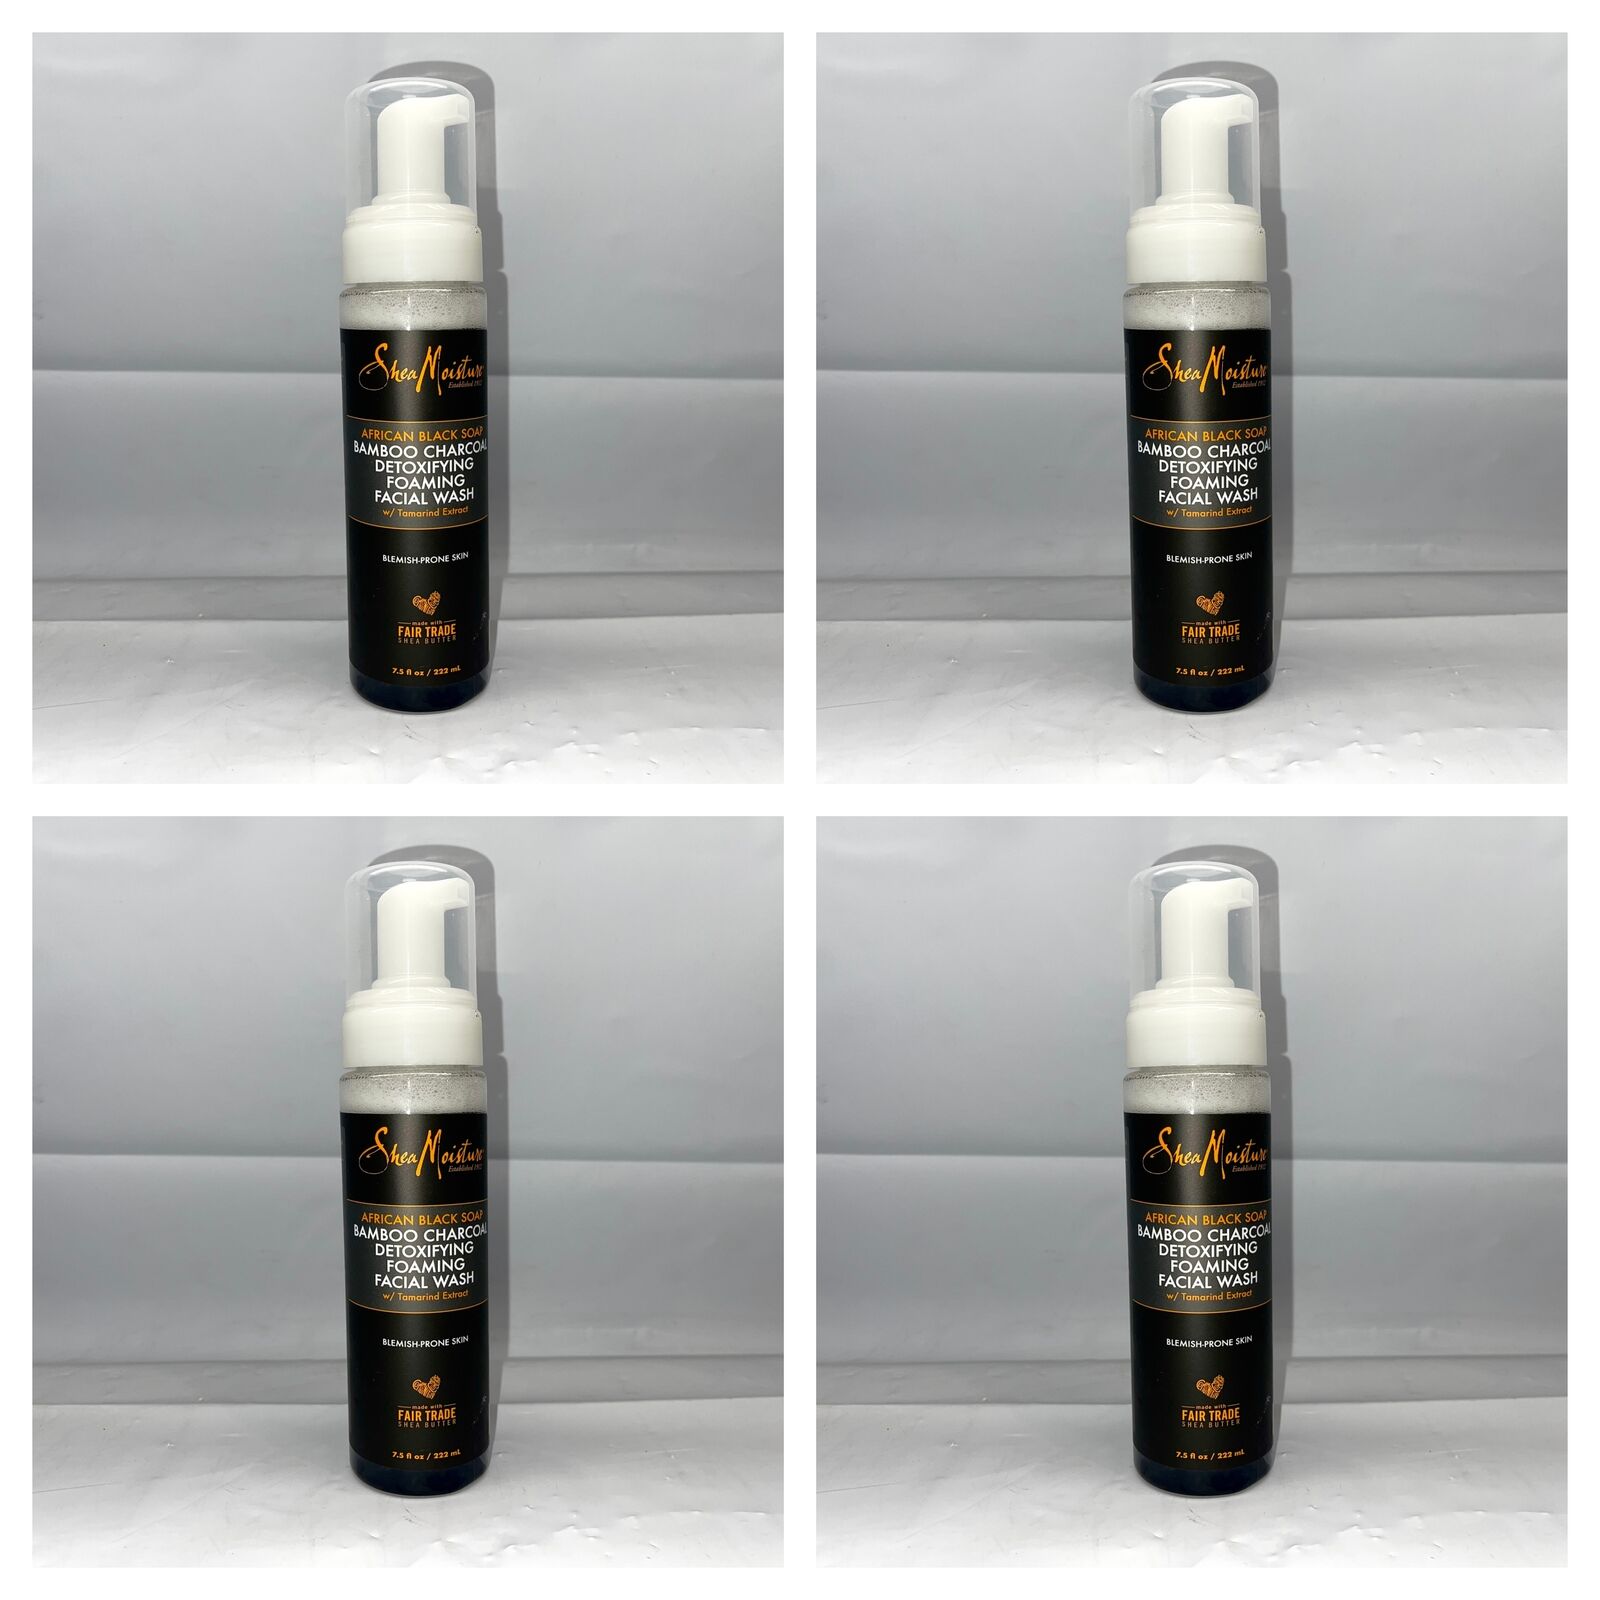 (4) SheaMoisture African Black Soap Detoxifying Foaming Facial Wash, 7.5 fl oz